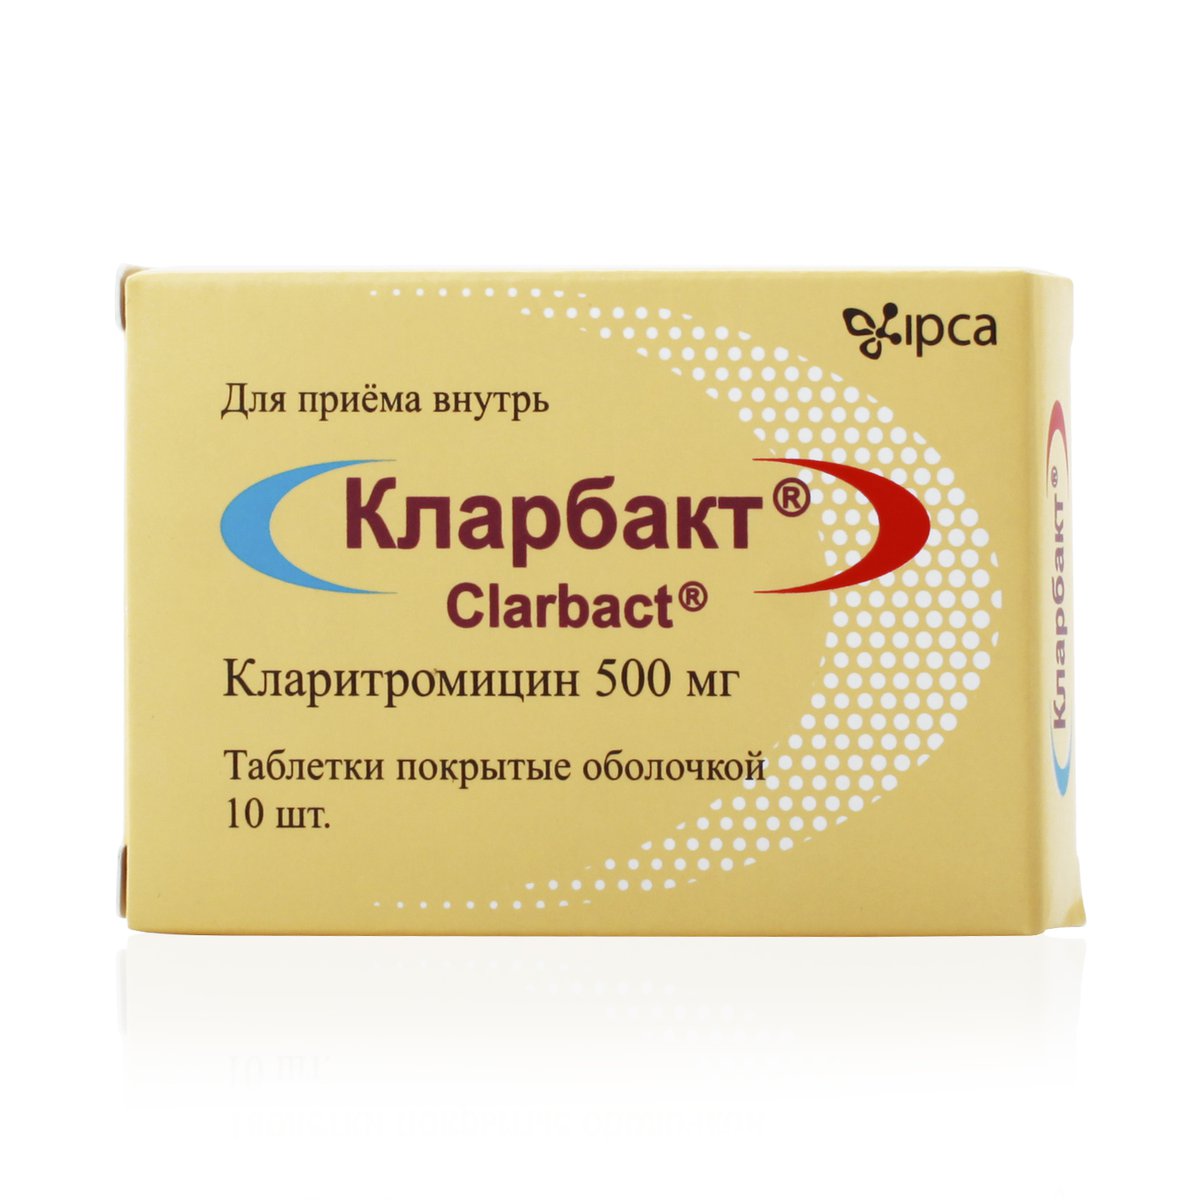 Кларбакт (таблетки, 10 шт, 500 мг) - цена,  онлайн  .